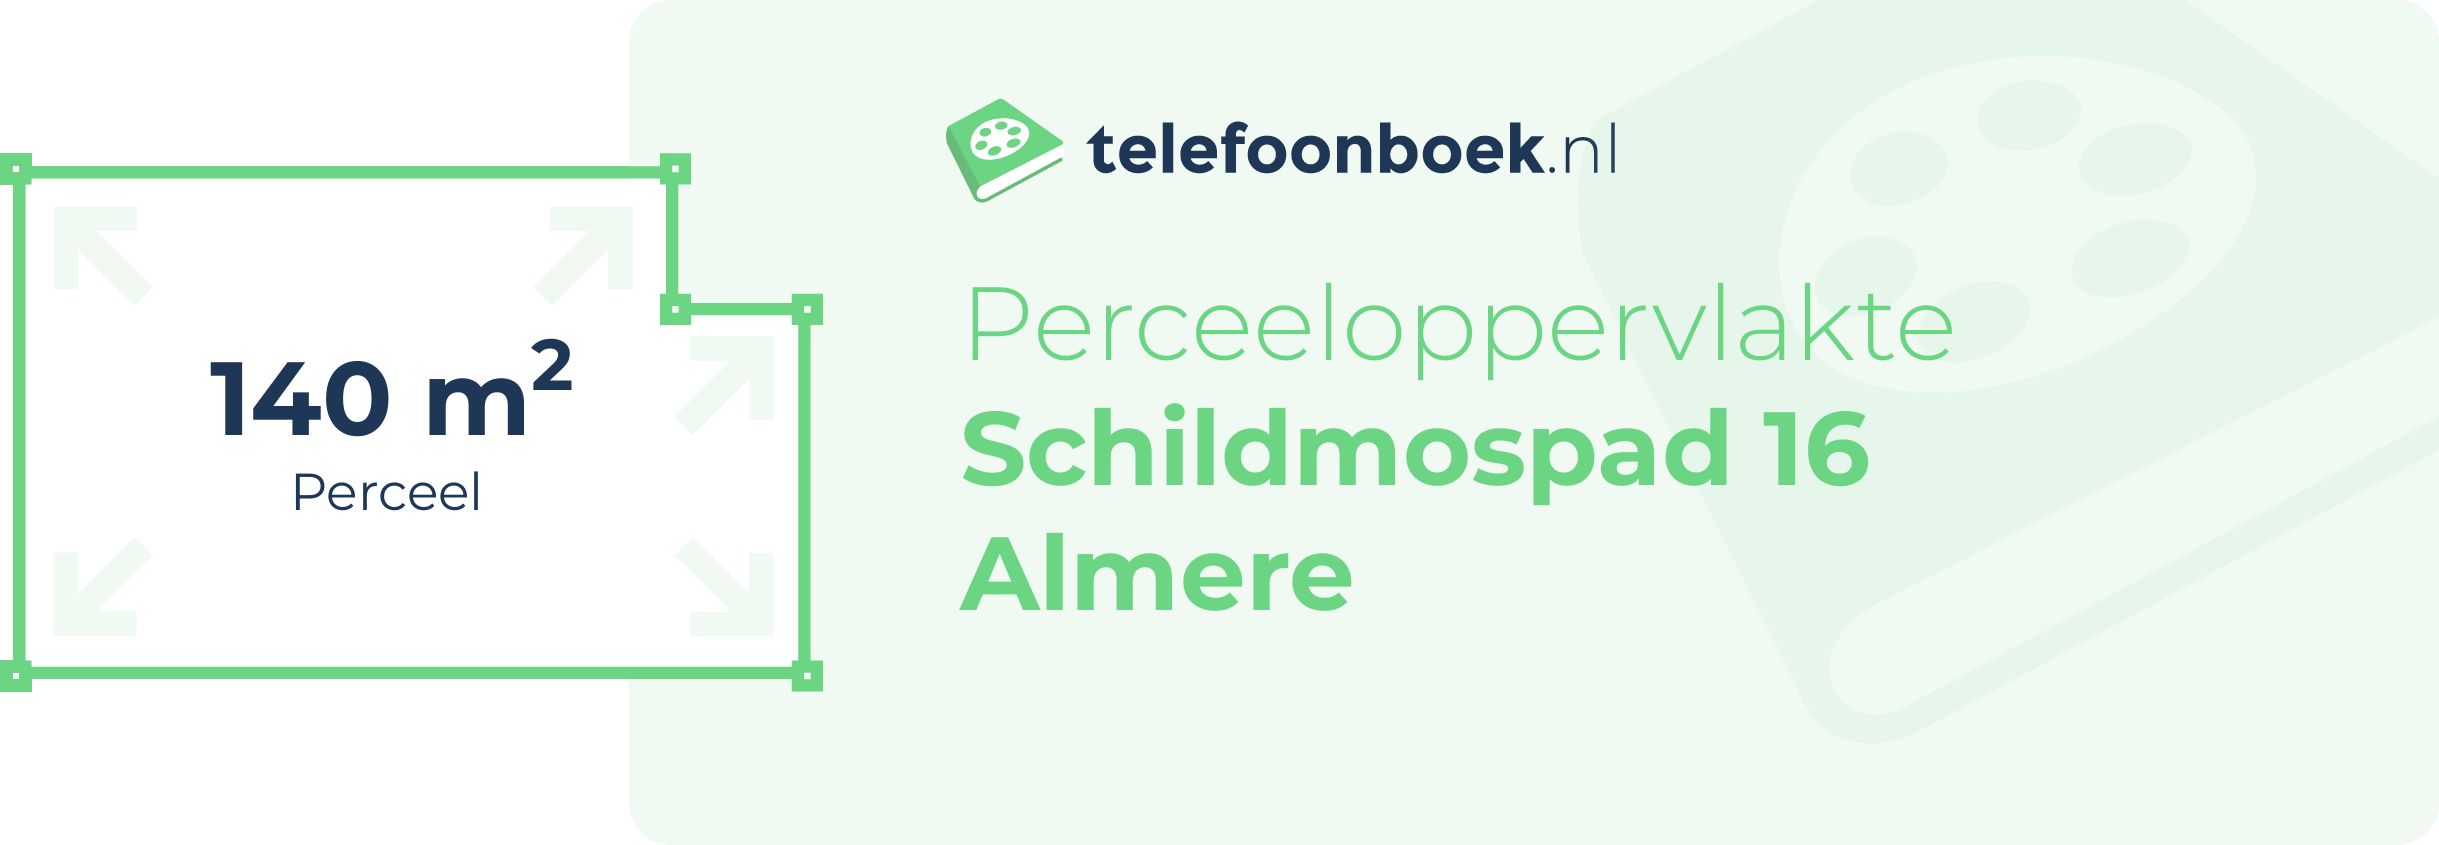 Perceeloppervlakte Schildmospad 16 Almere